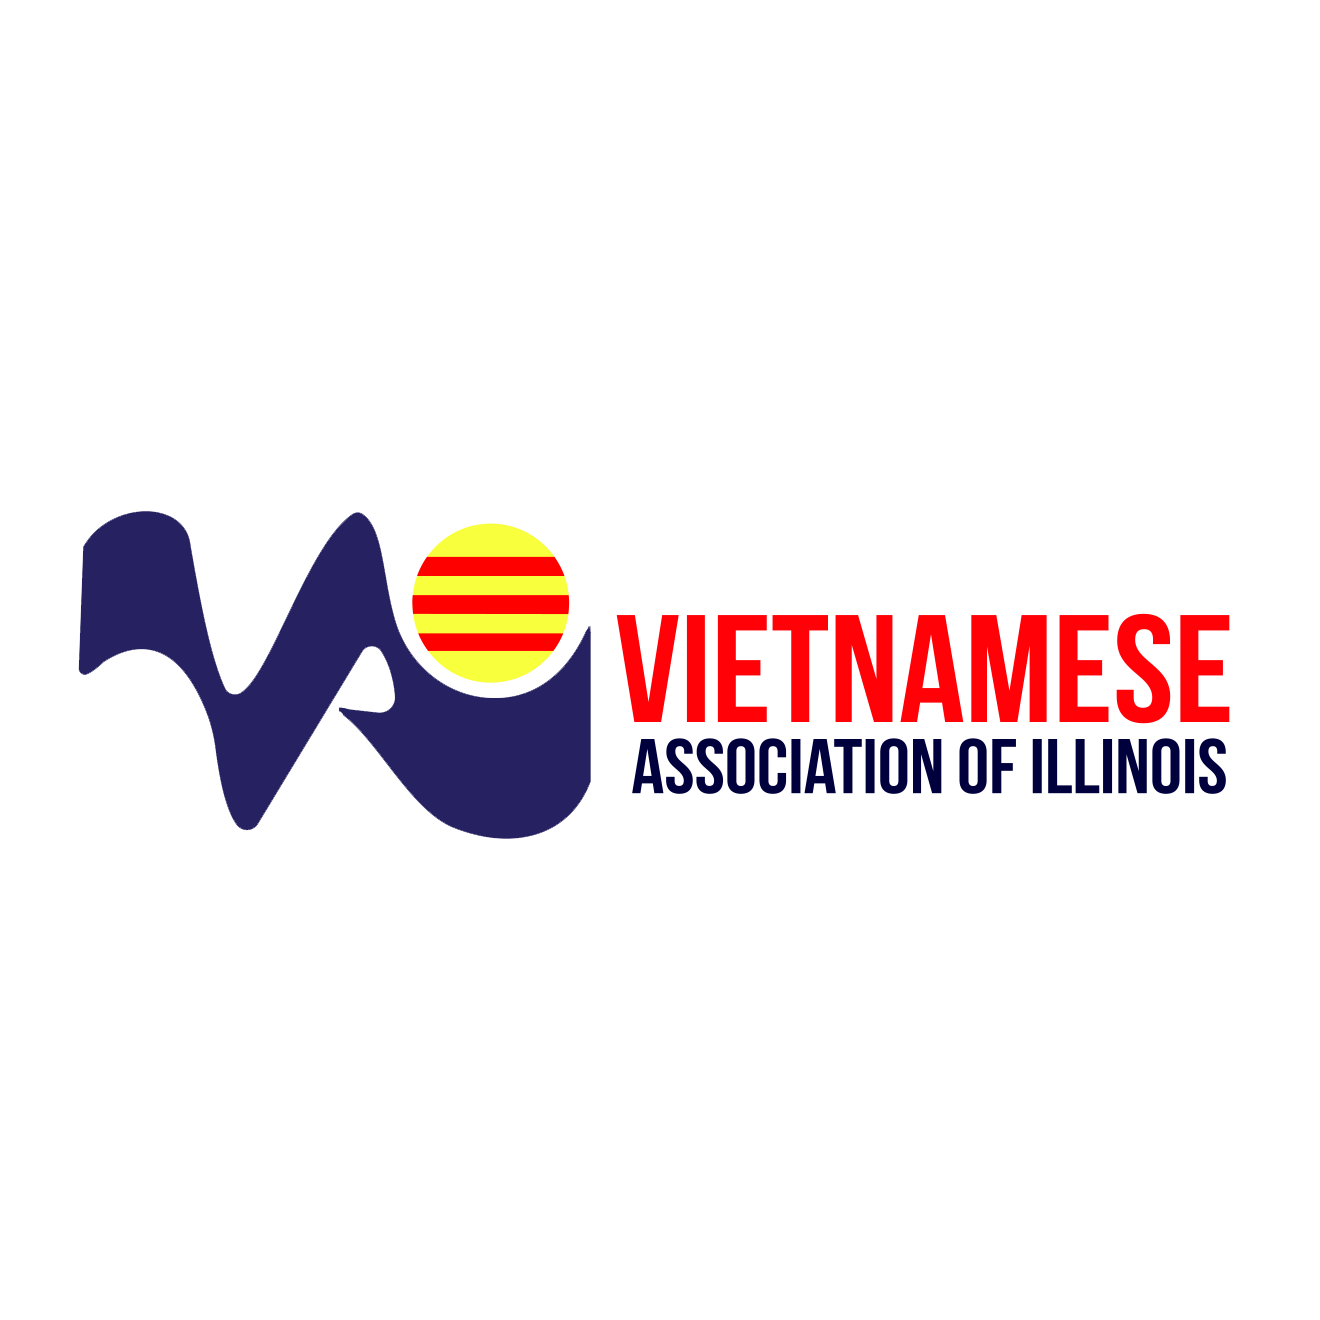 Vietnamese Organization in Illinois - Vietnamese Association of Illinois